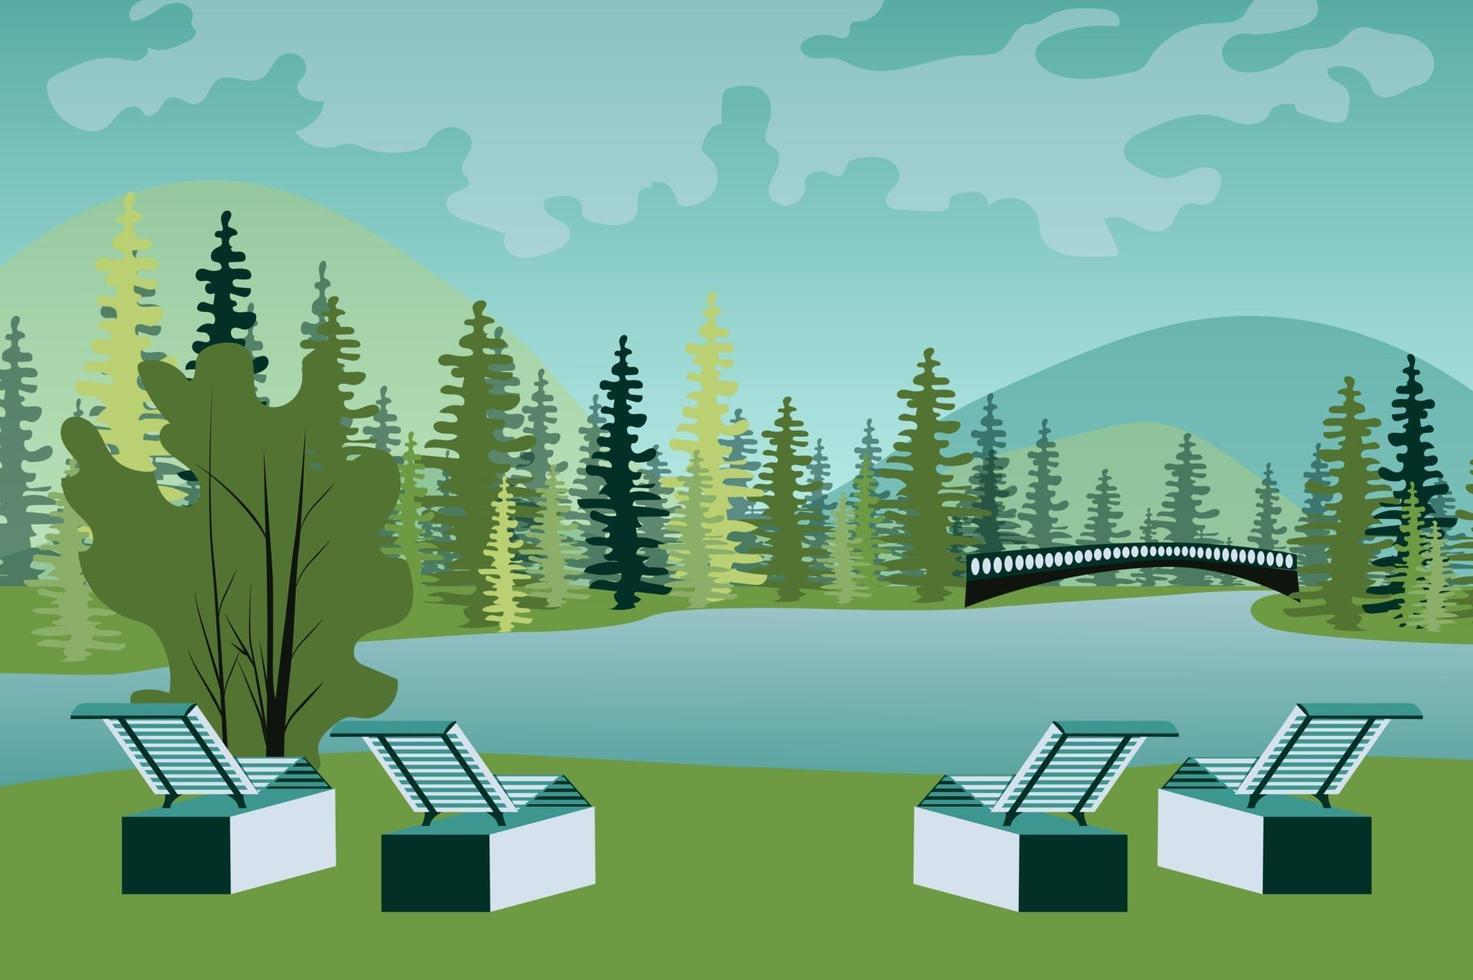 parc avec chaises longues au bord du lac fond de paysage dans un style plat vecteur